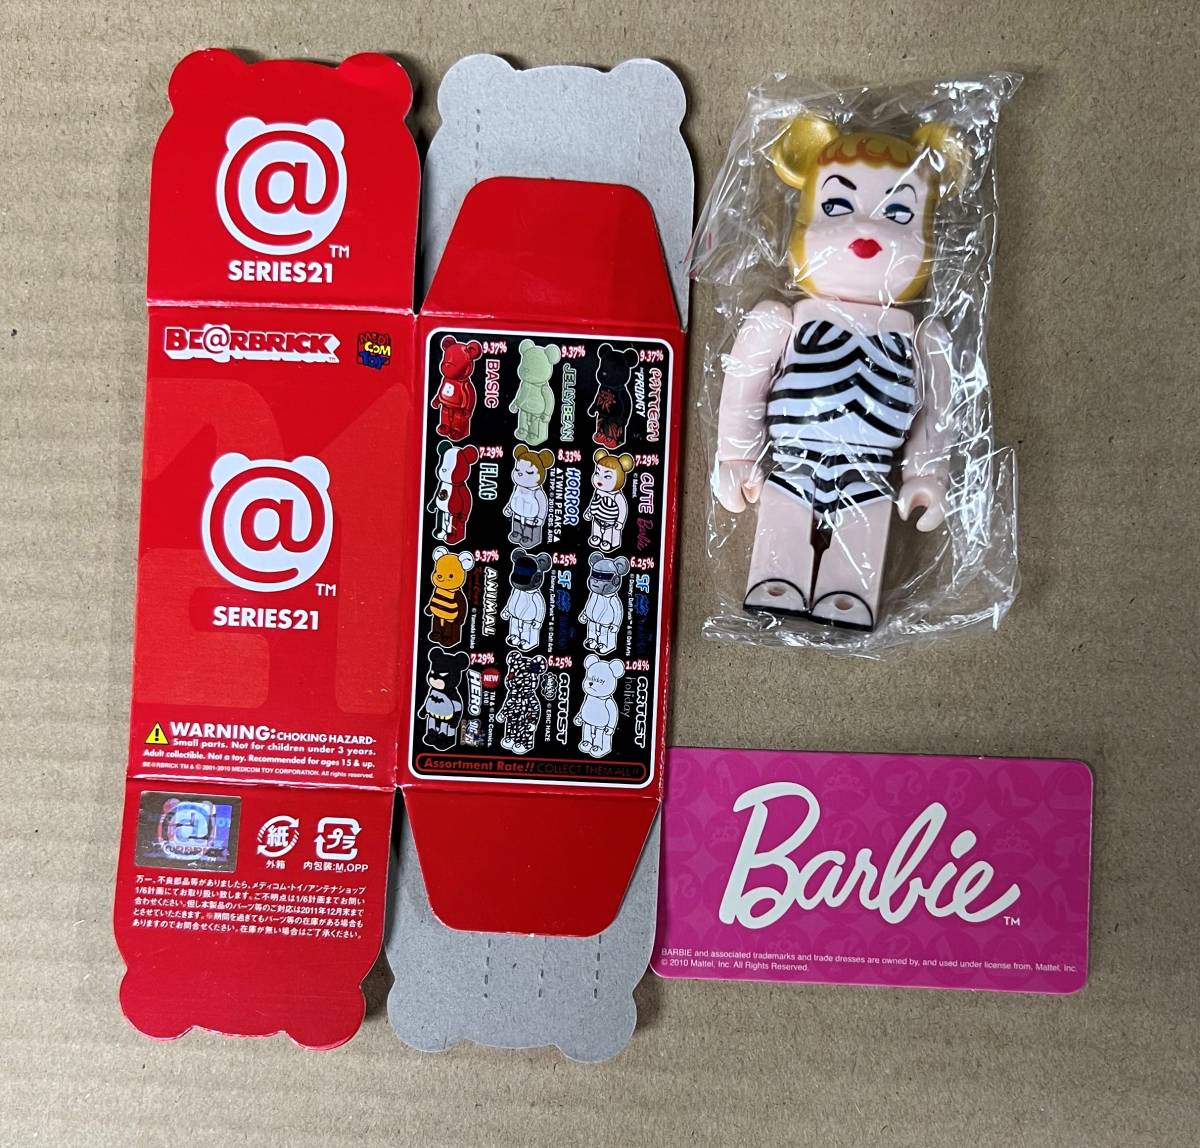 ベアブリック シリーズ21 キュート 「バービー人形 Barbie 」 内袋未開封 カード・箱付 BE@RBRICKの画像1